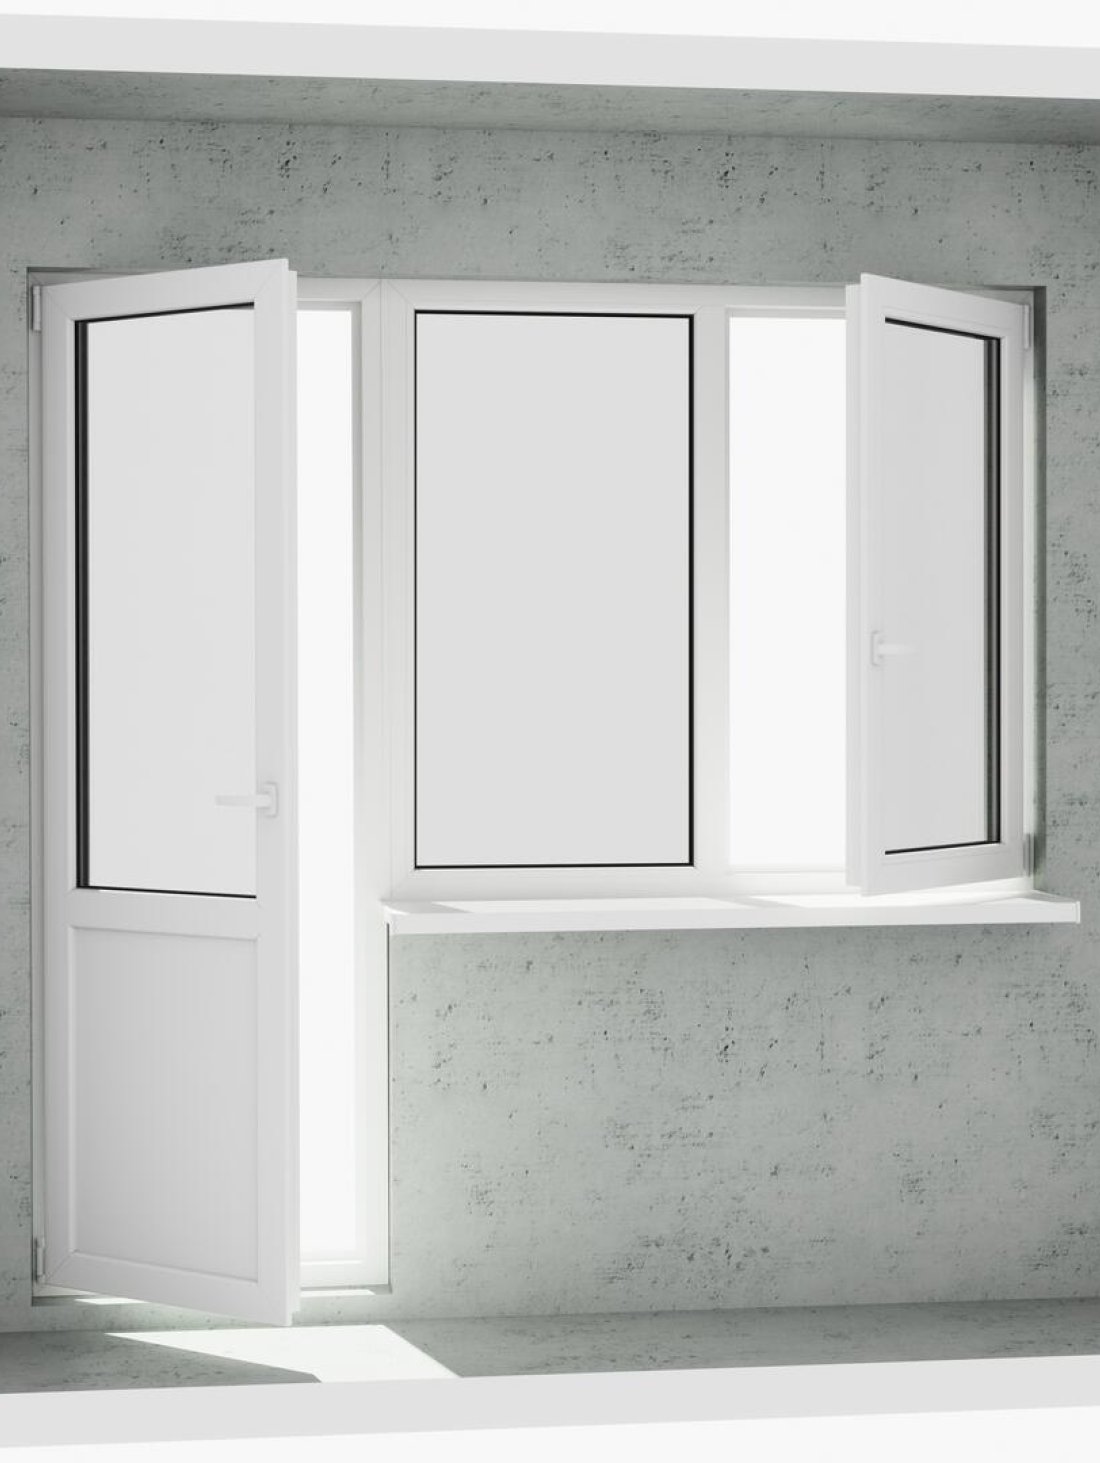 Выход на лоджию (балкон): бюджетный классический белый металлопластиковый балконный блок (дверь без режима проветривания, открывается 1 половинка окна) - Купить